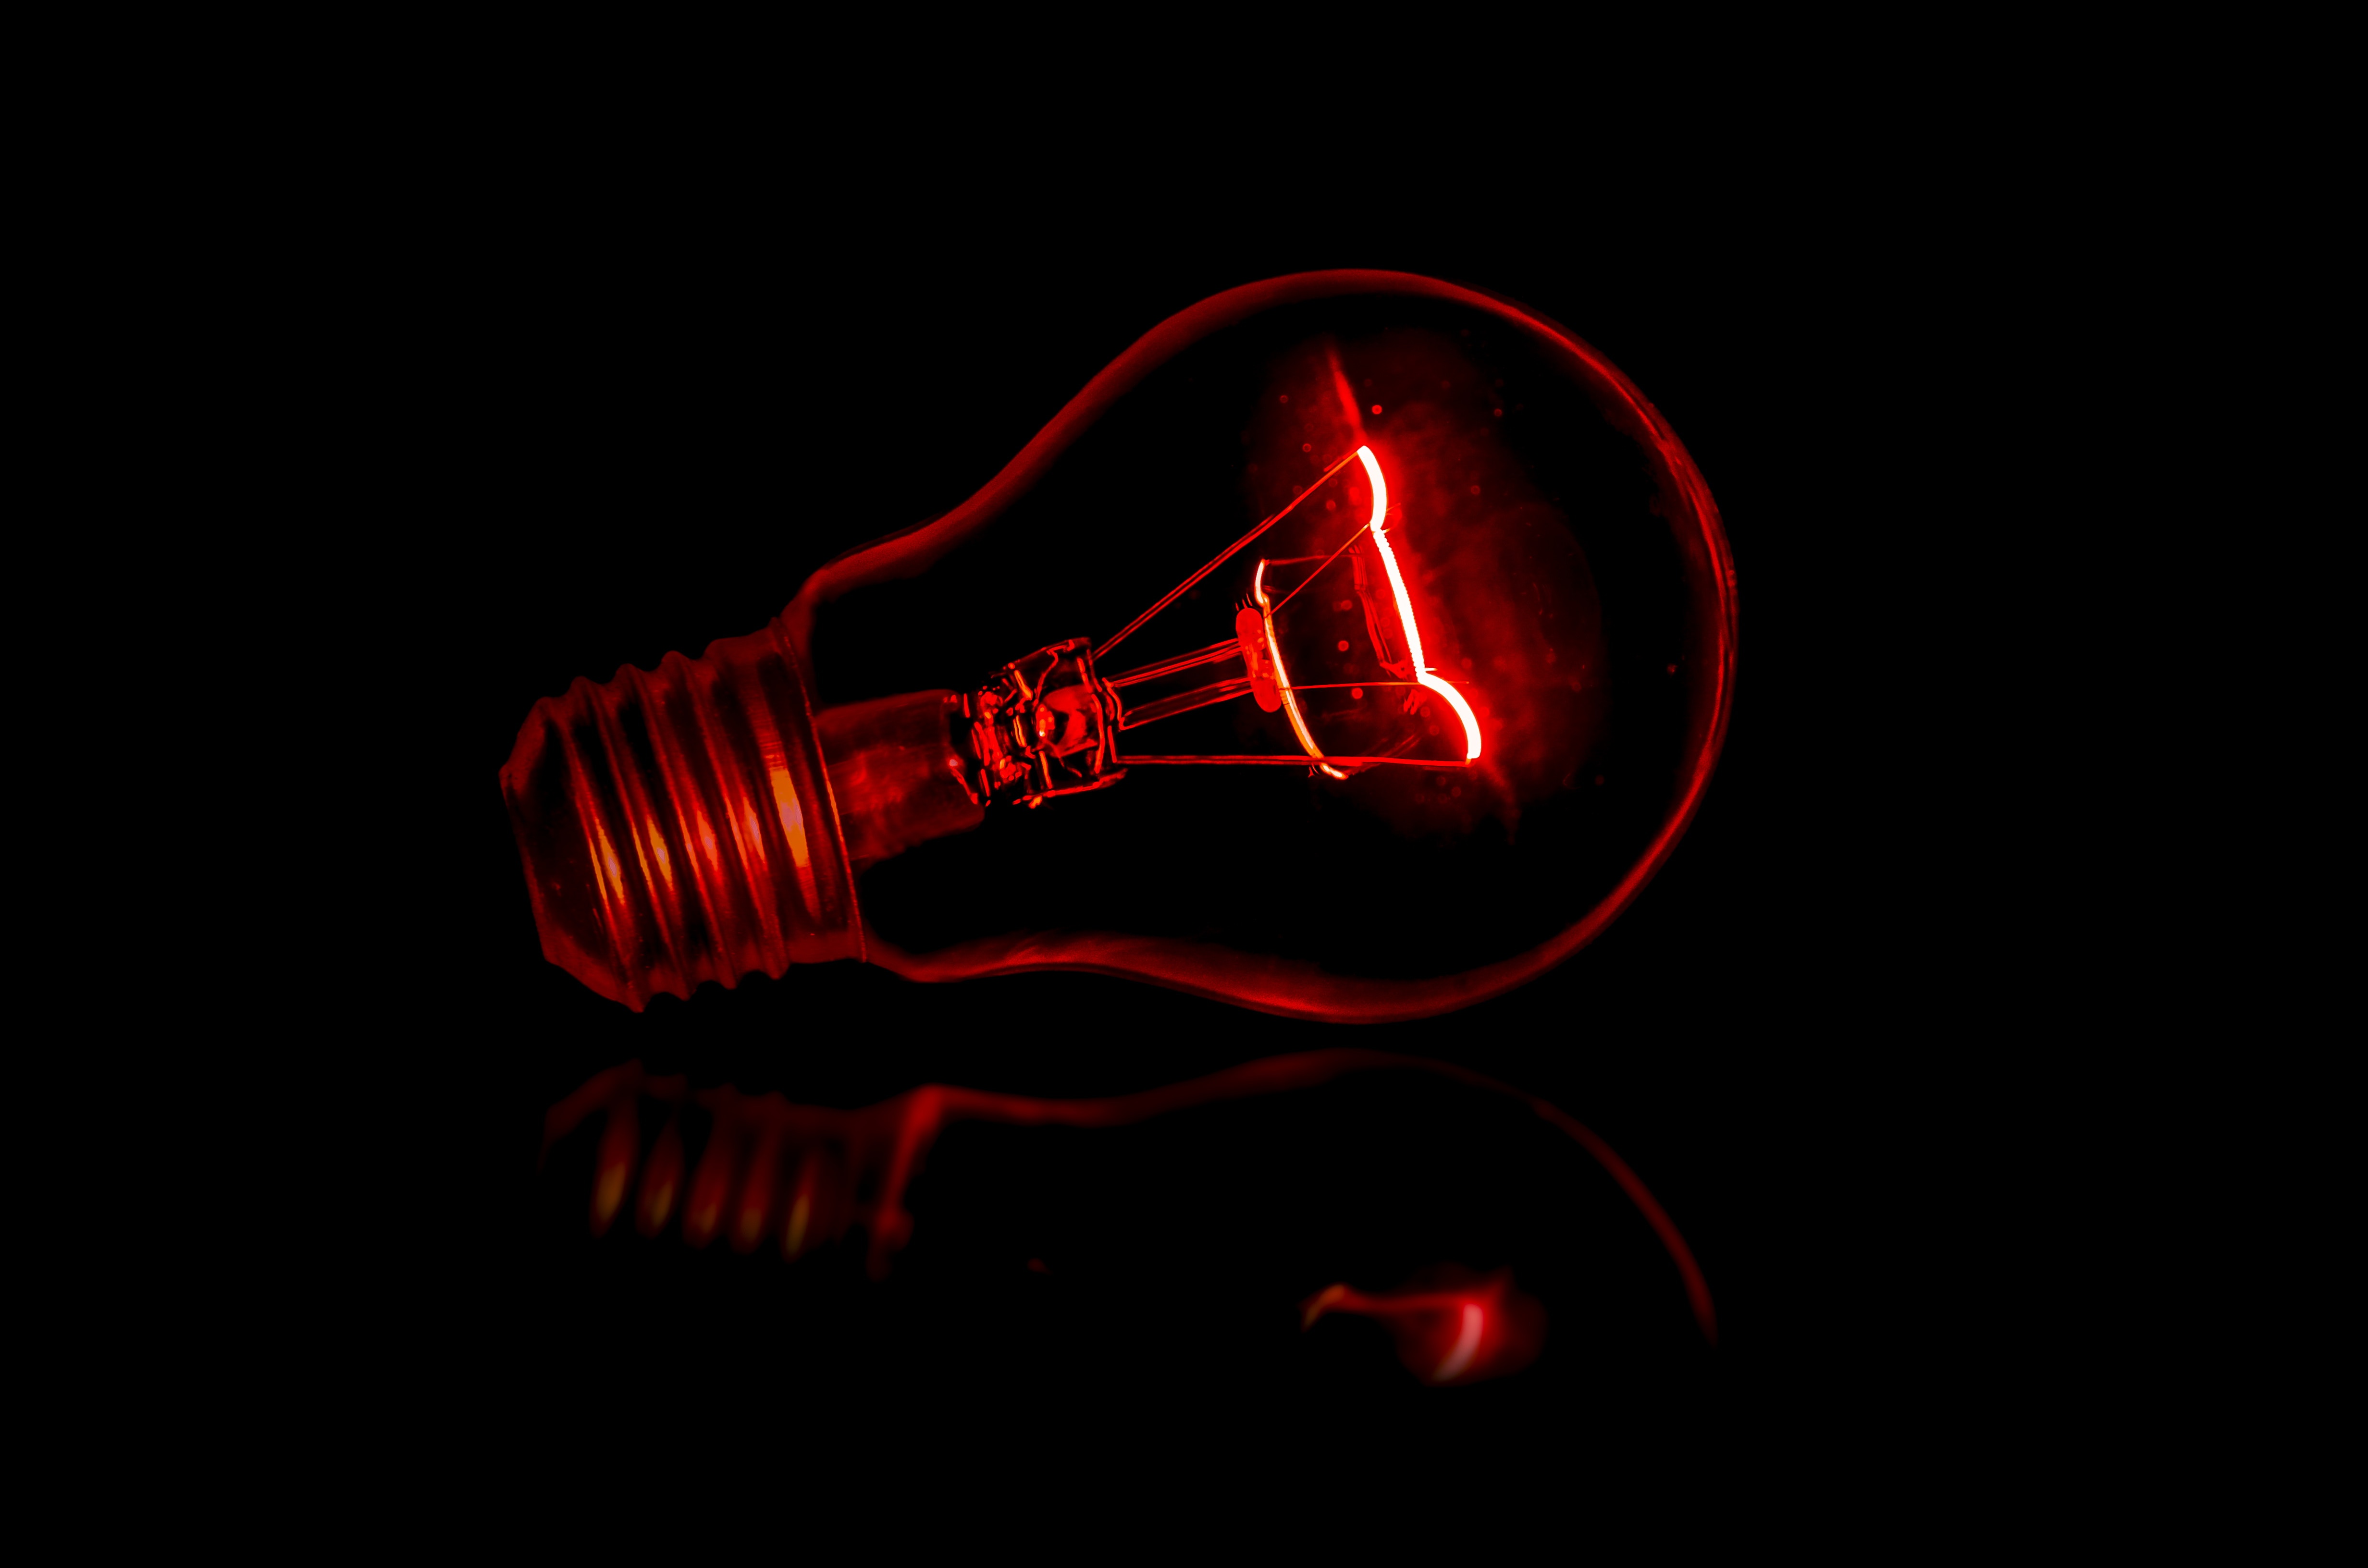 Red light bulb against black background